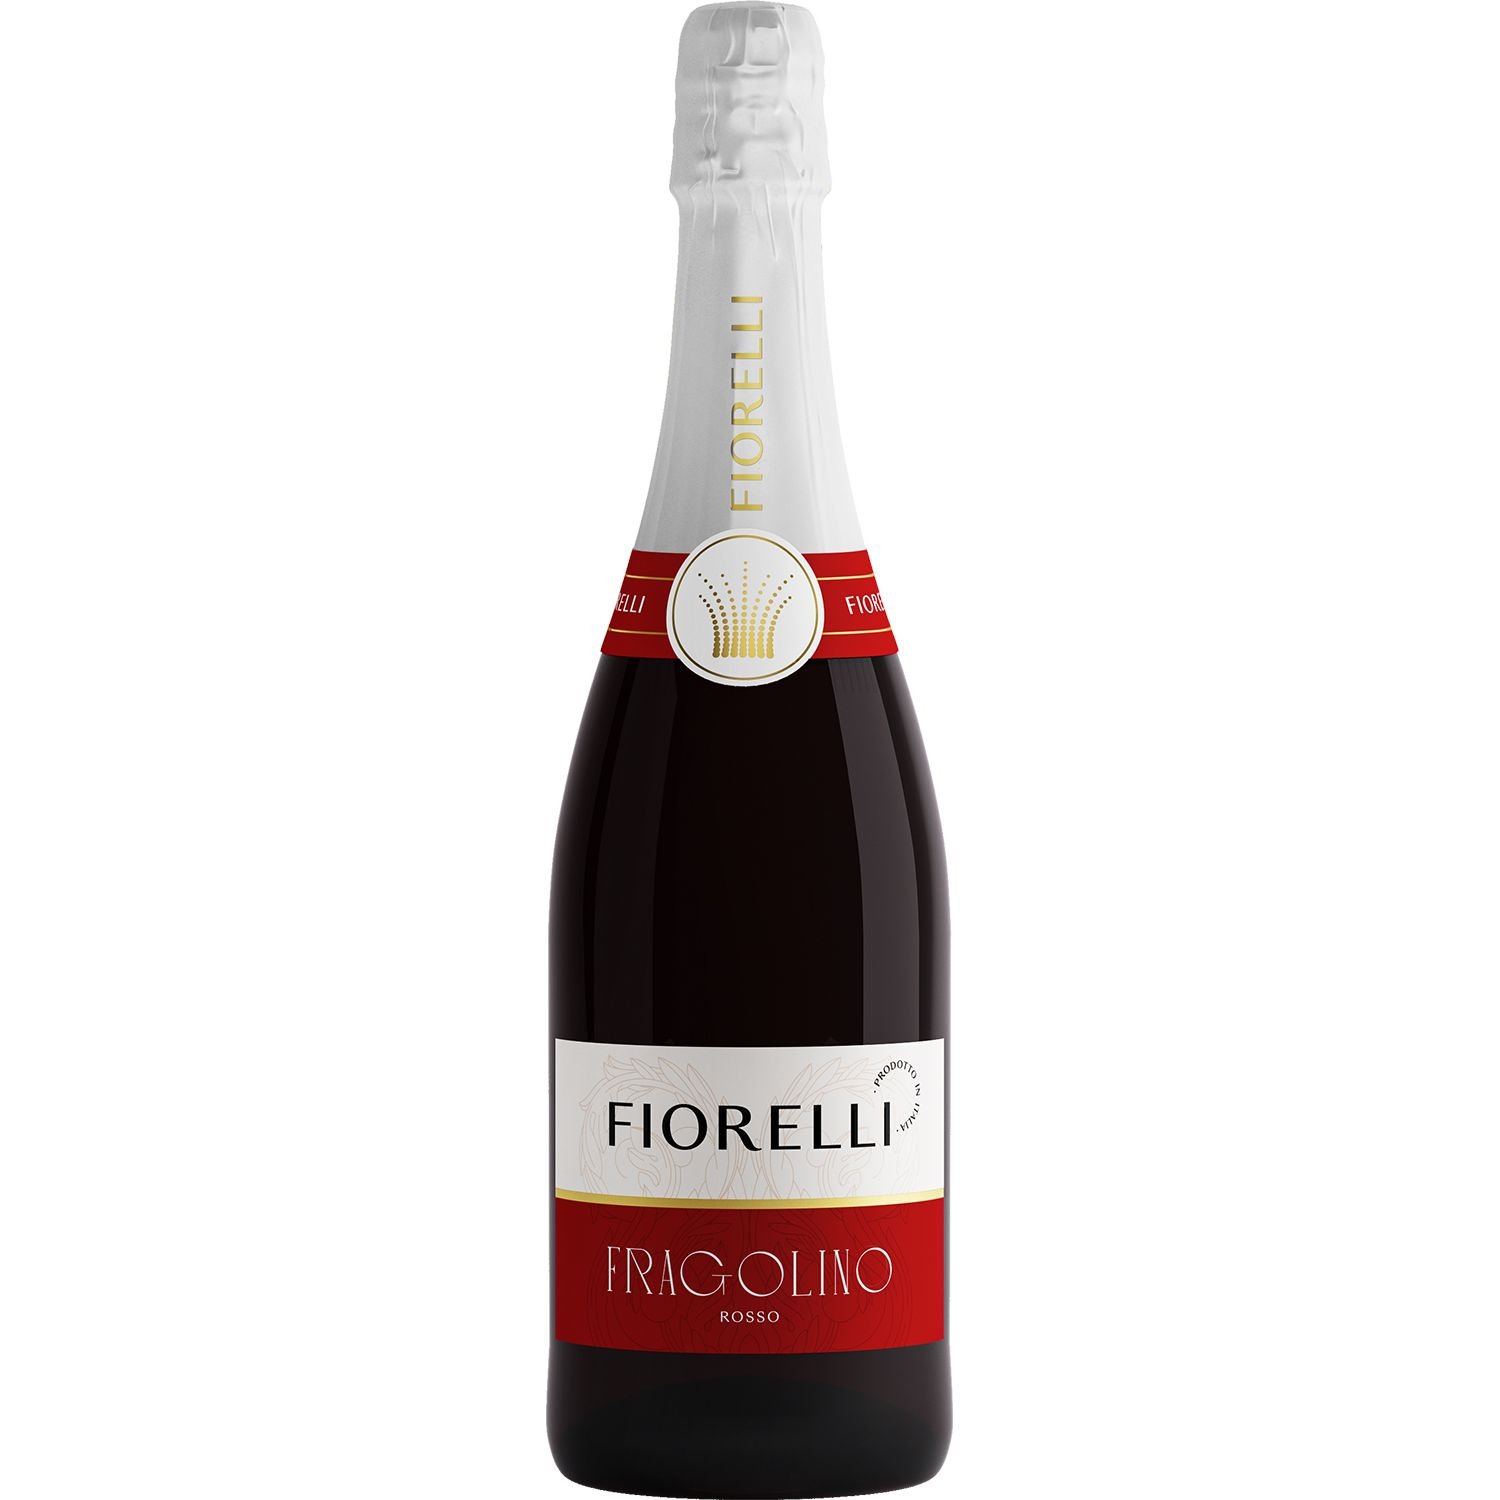 Напиток игристый Fiorelli Фраголино Россо, клубничный, сладкий, 7%, 0,75 л (716189) - фото 1